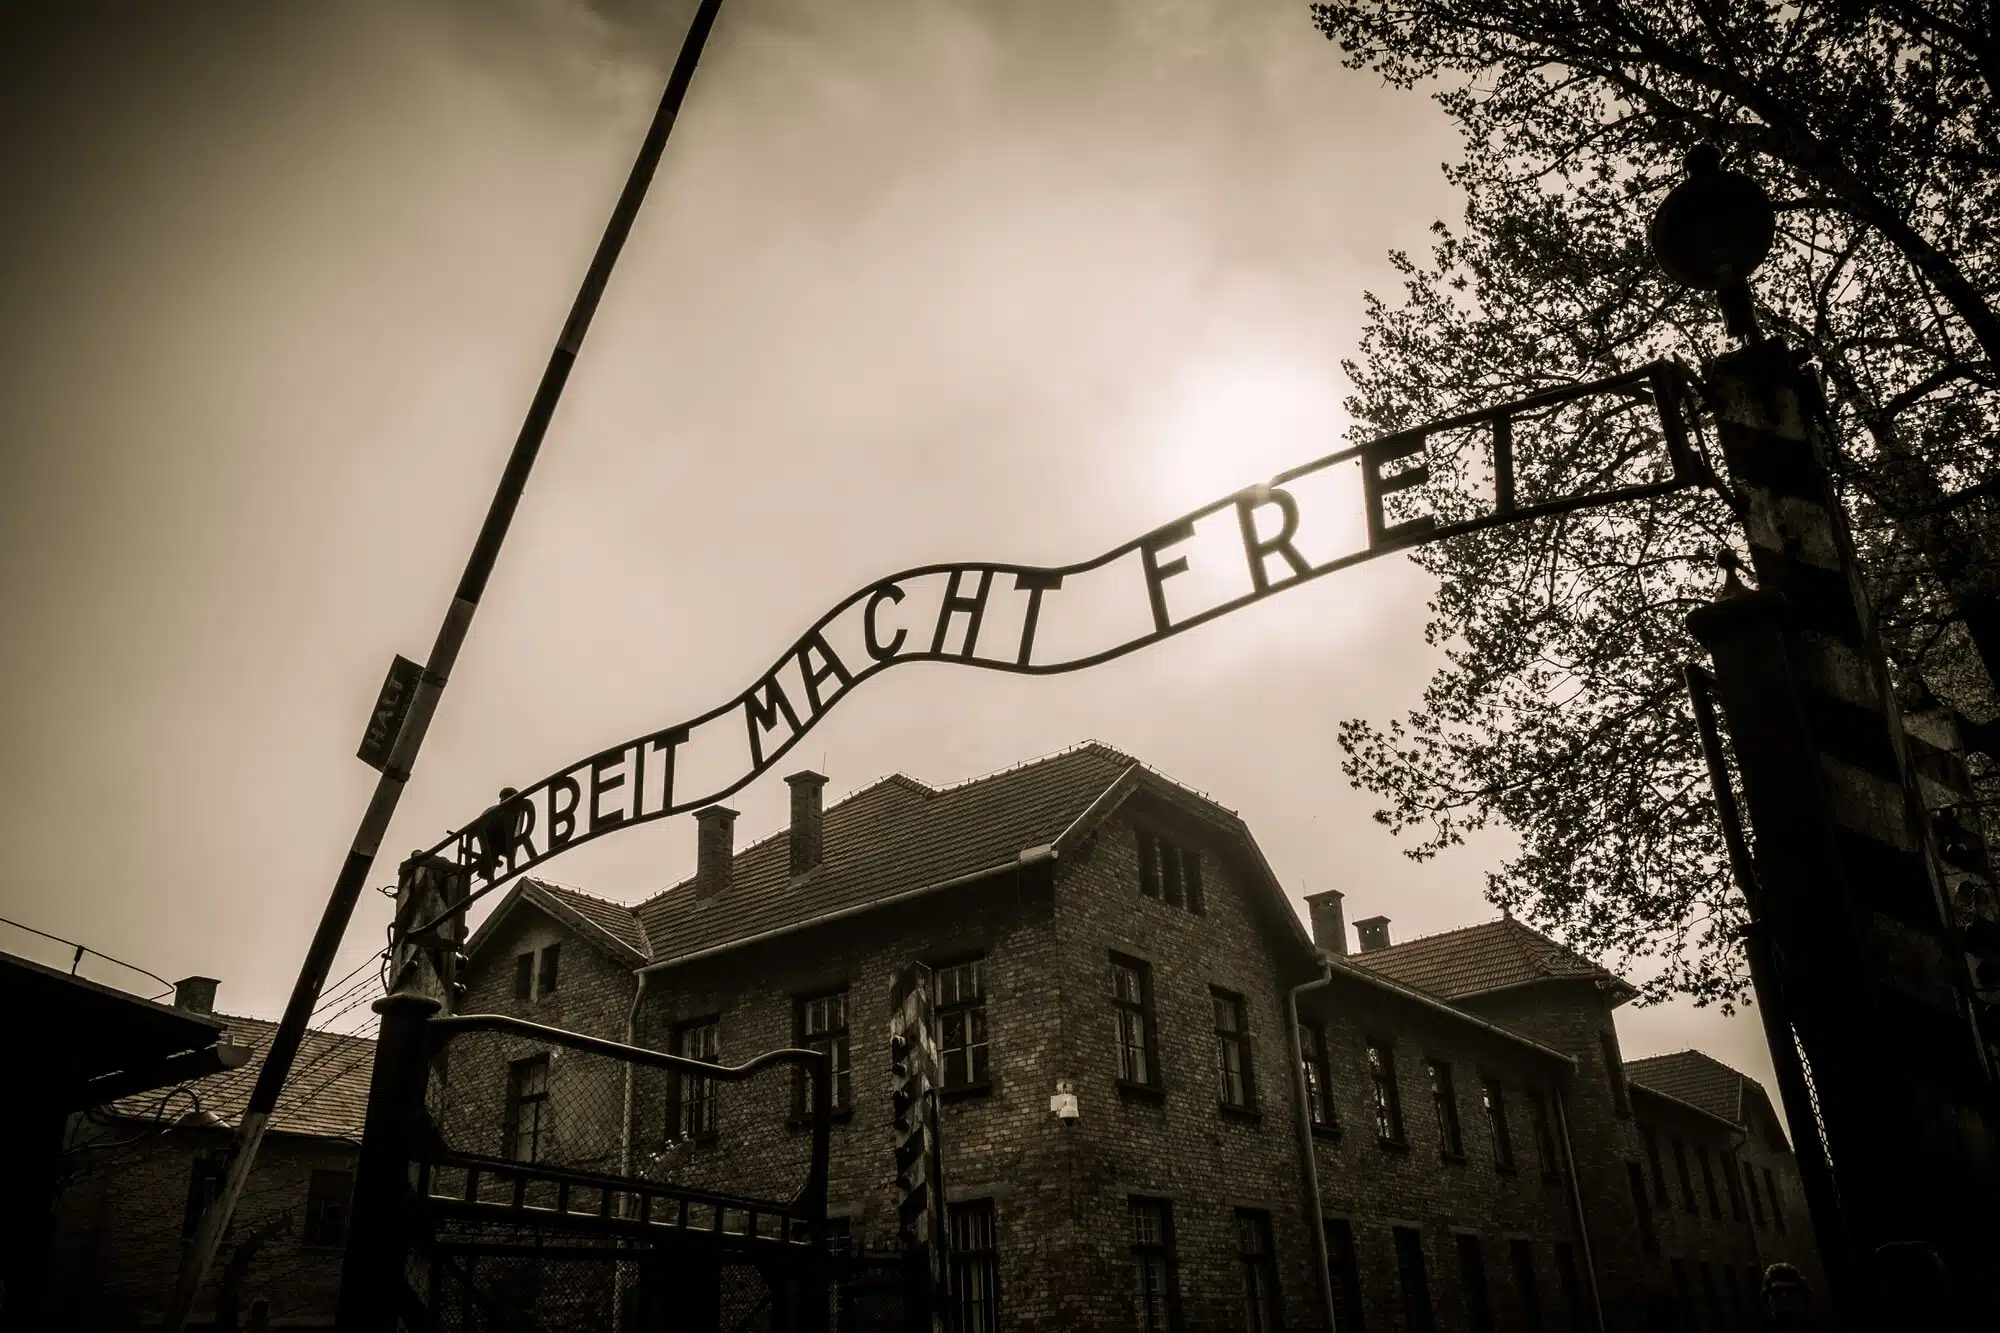 The main entrance to the Auschwitz 1 extermination camp, Poland. Image: depositphotos.com